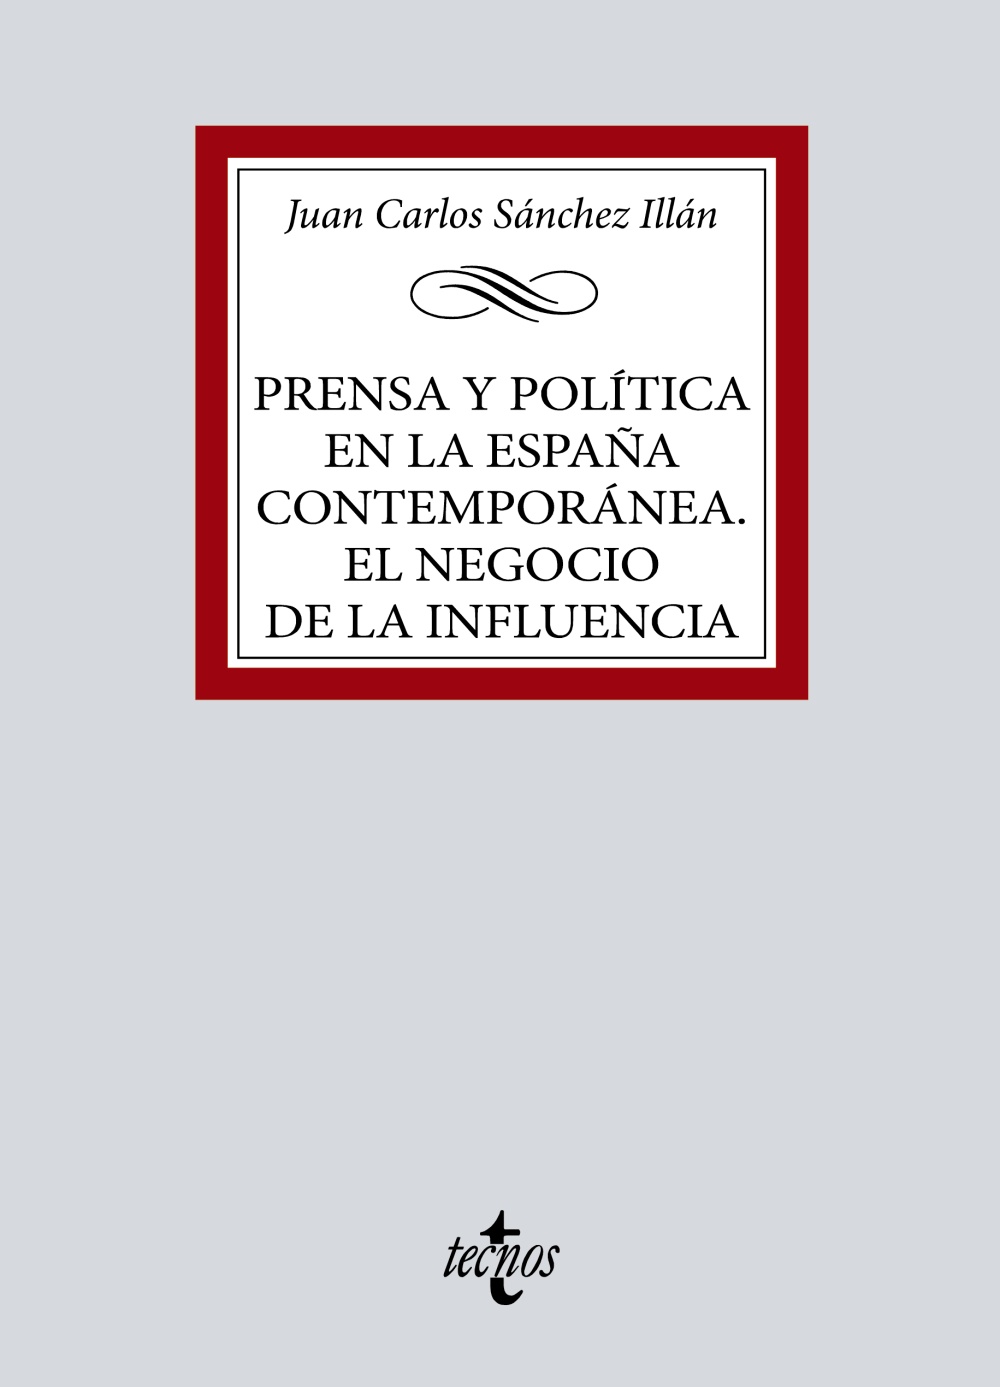 PRENSA Y POLITICA EN LA ESPAÑA CONTEMPORANEA